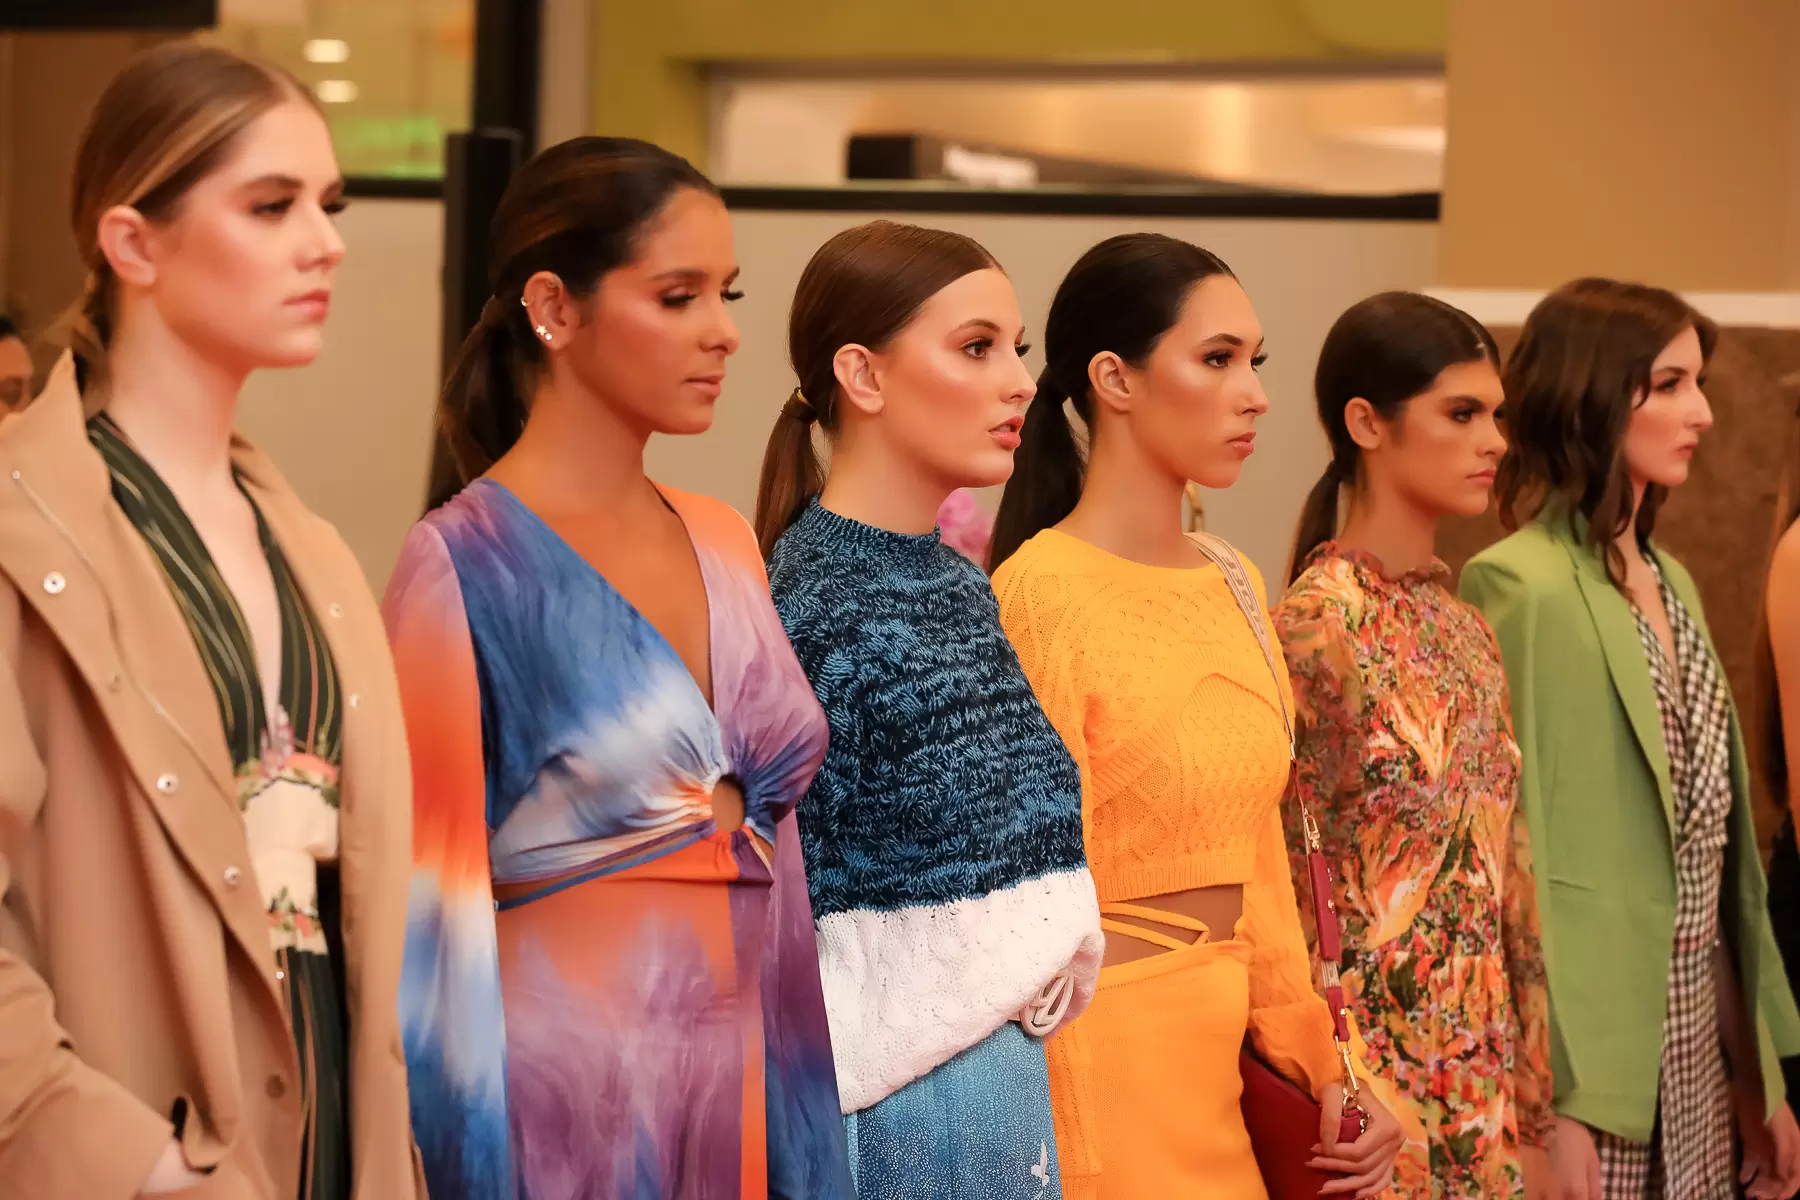 Villa Romana Shopping promove desfile de marcas internacionais, consultoria de  estilo e bate-papo sobre empreendedorismo para comemorar o Mês da Mulher